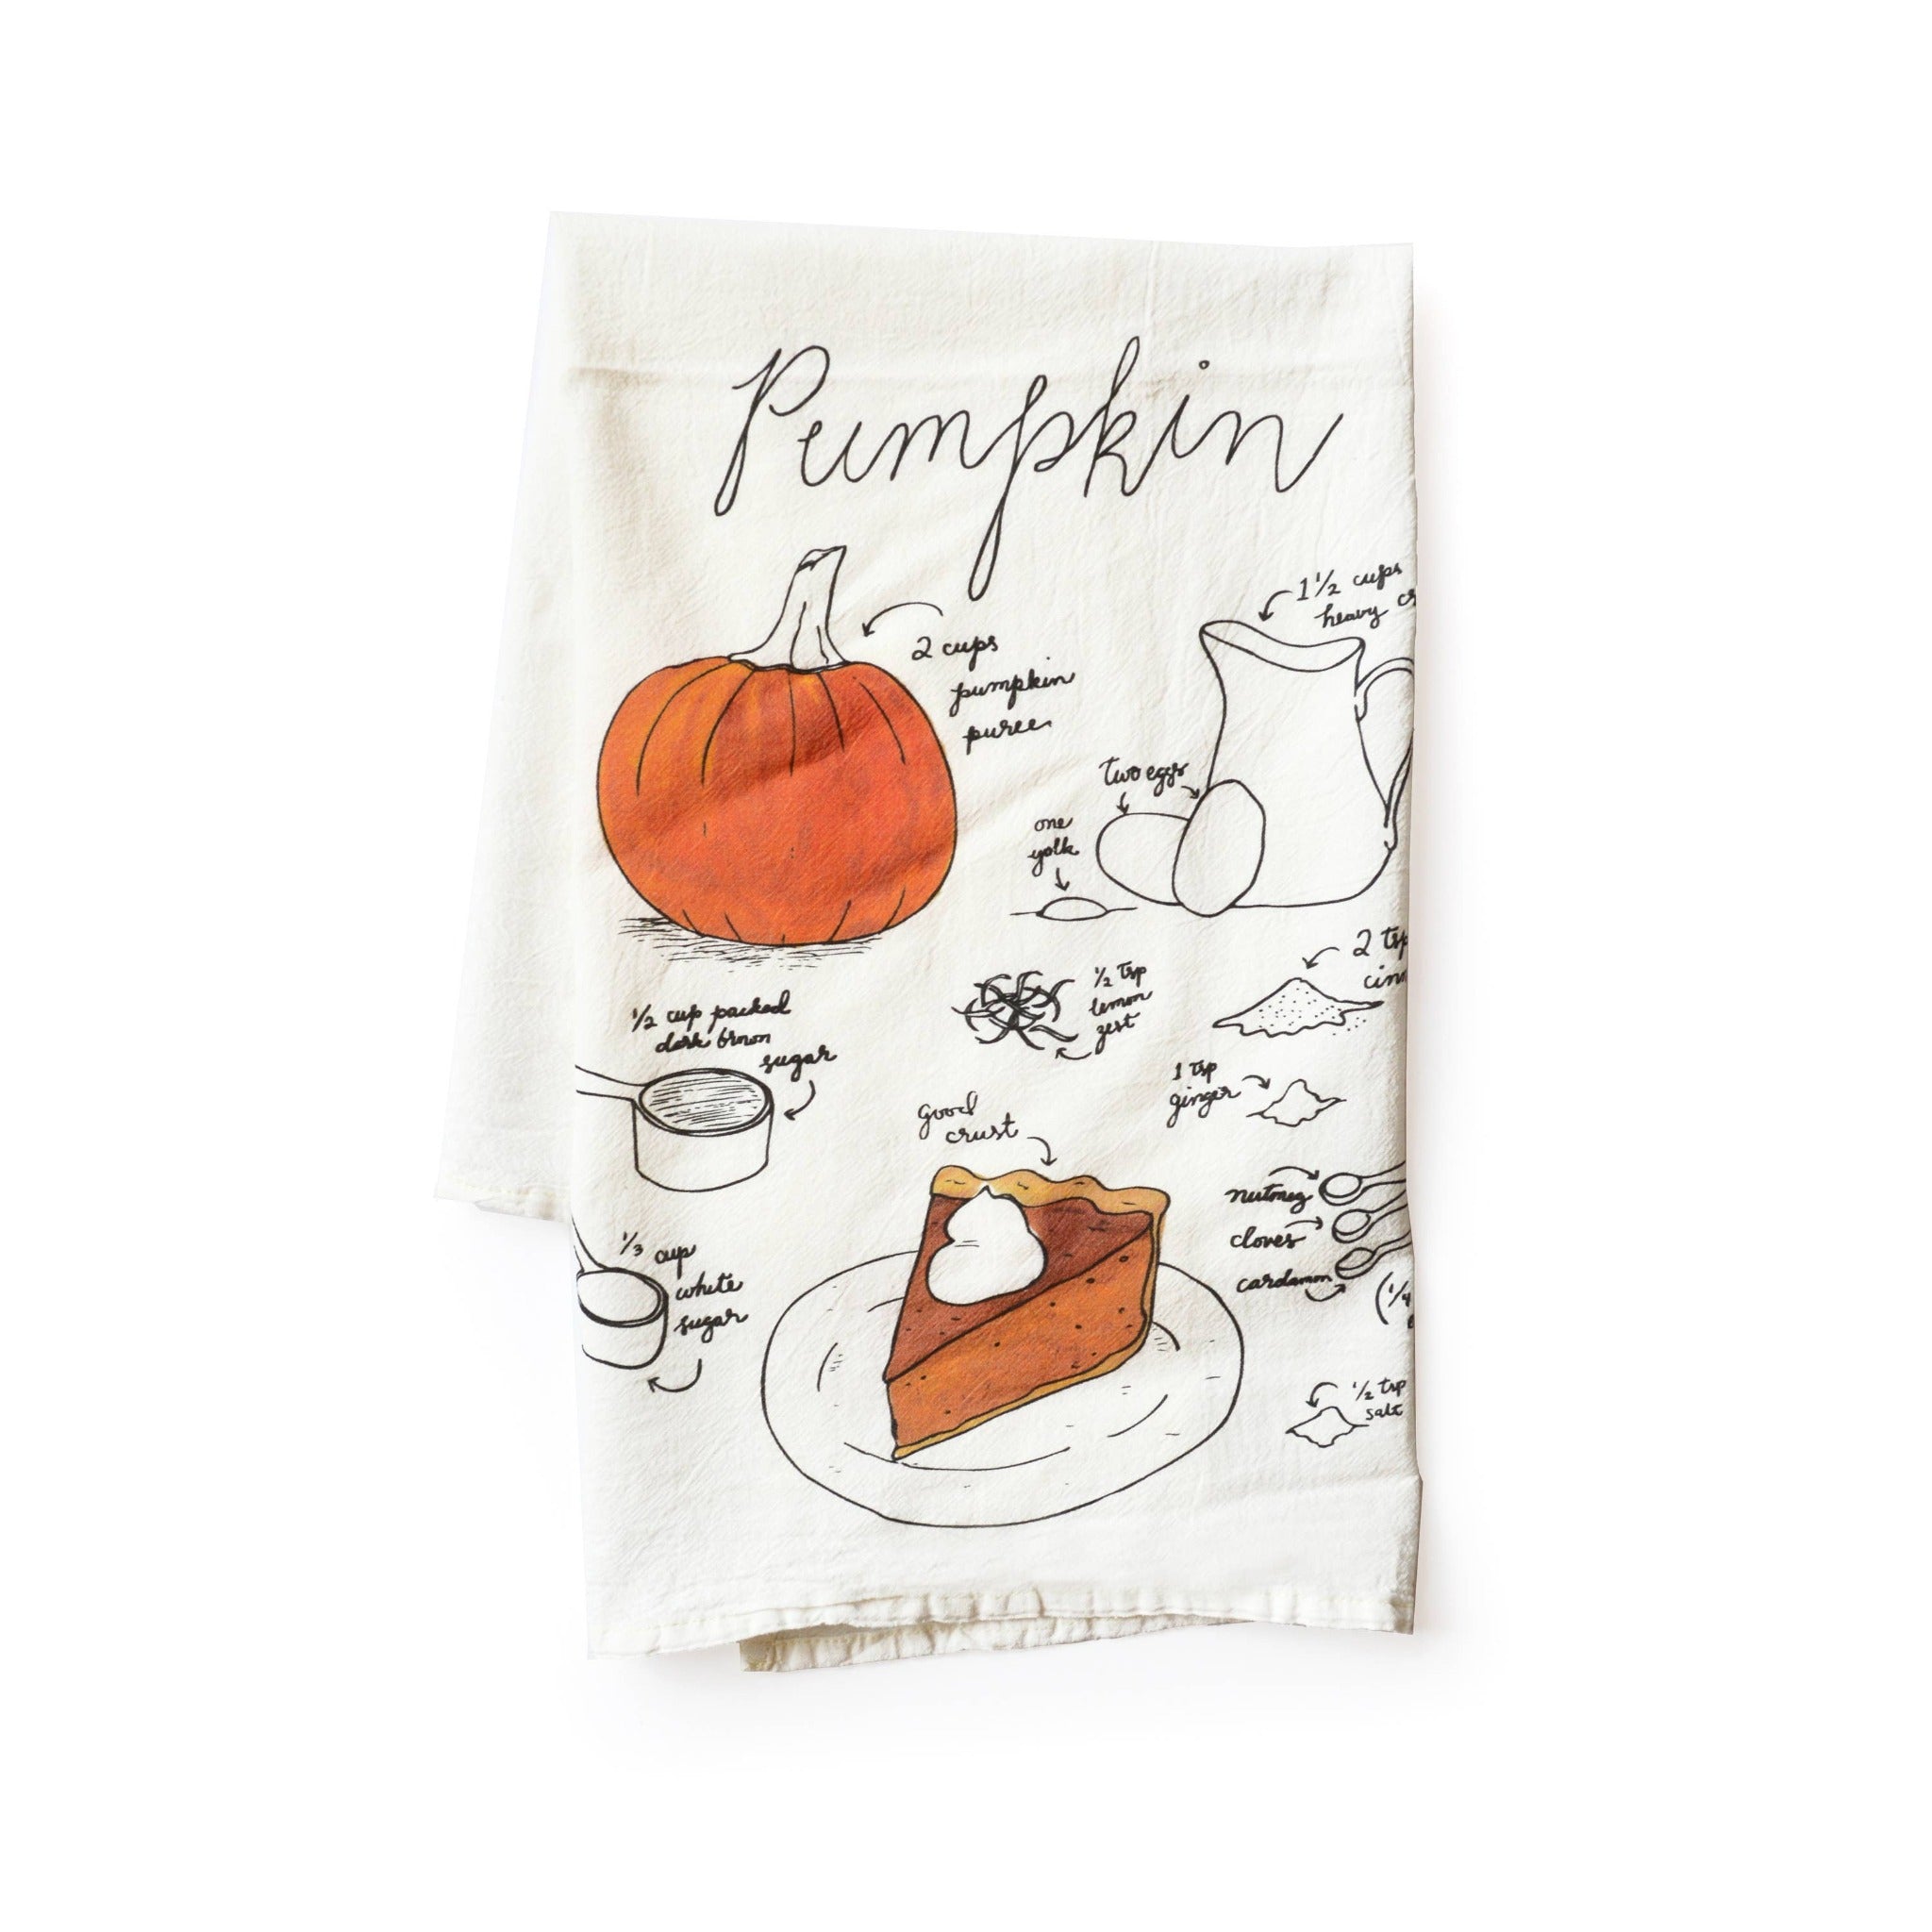 Pumpkin Pie Recipe Tea Towel